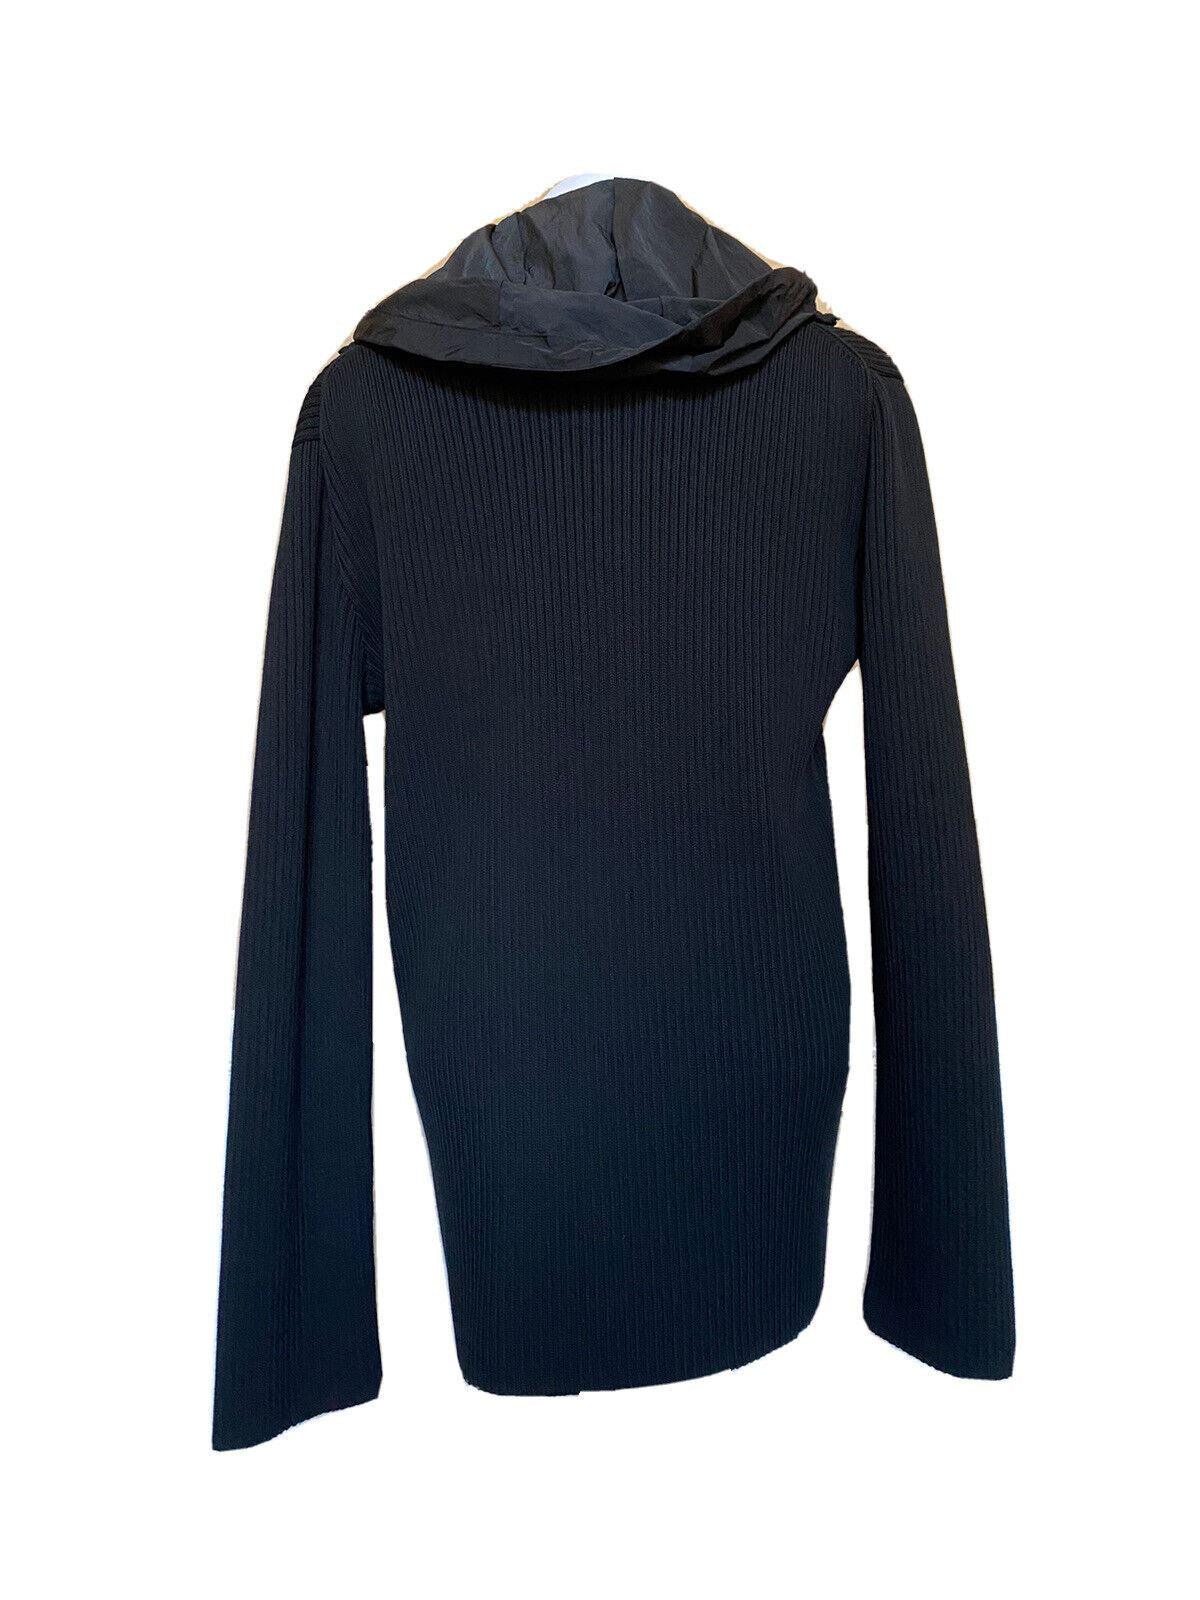 NWT $1750 Bottega Veneta Mens Chunky Merino Cotton Sweater Jacket Black L 631288